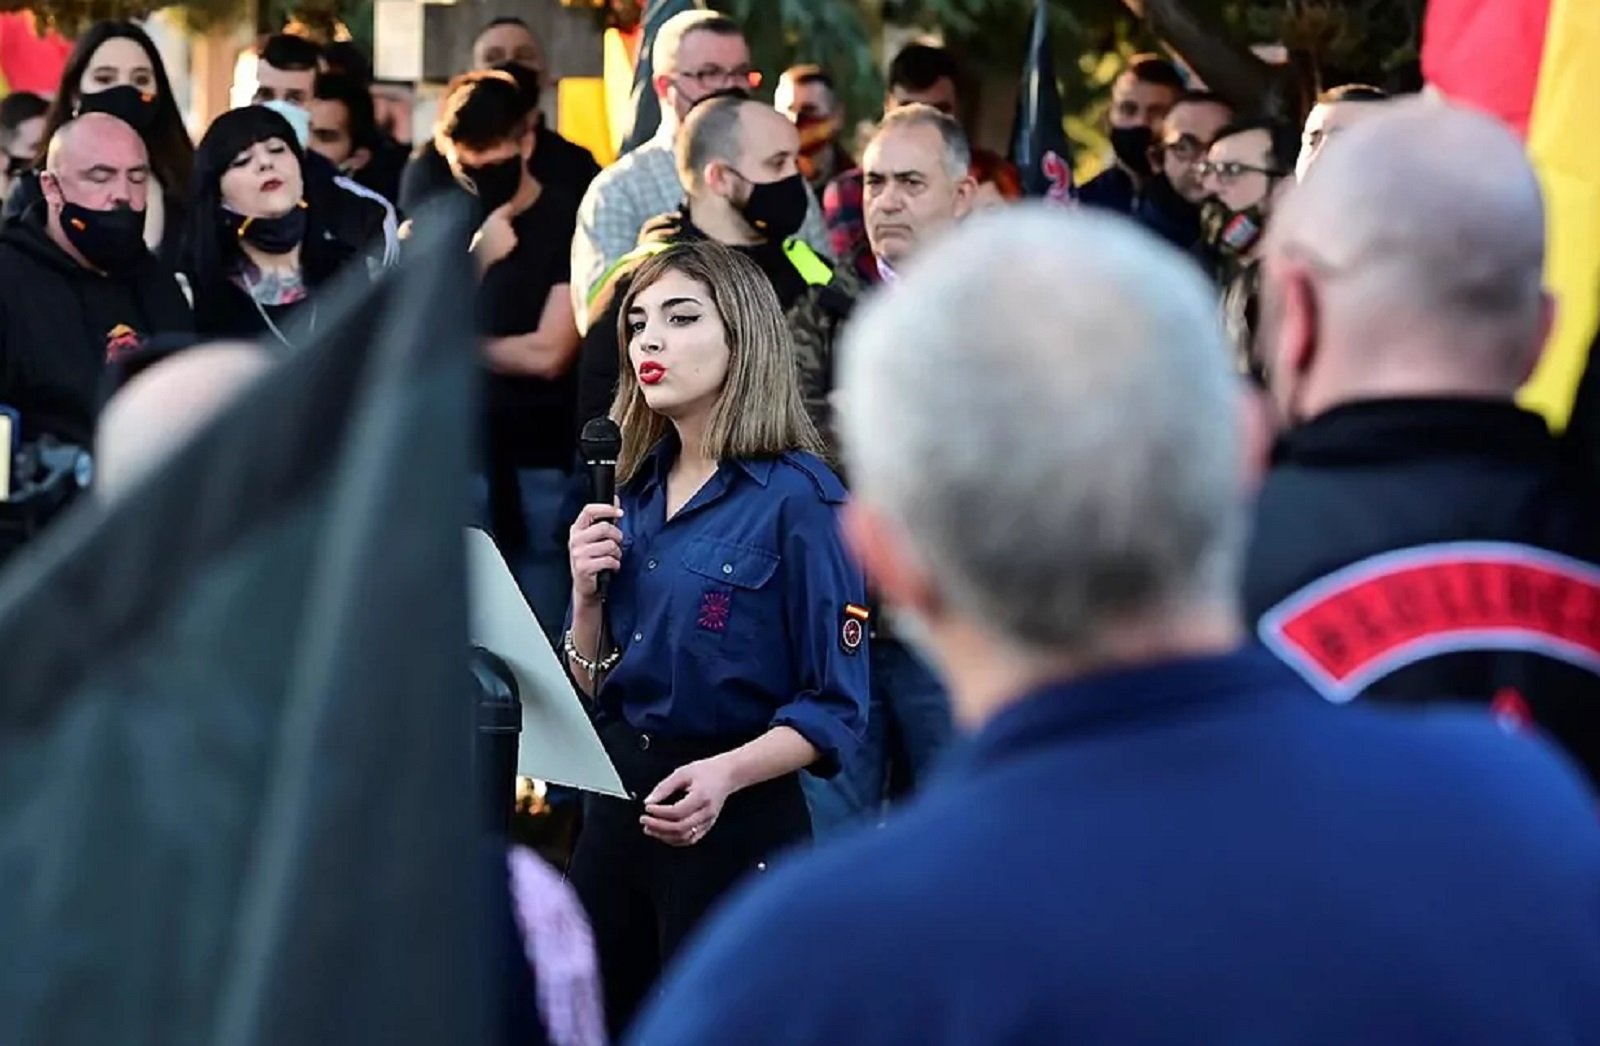 La jove antisemita de la manifestació a Madrid: "Soc feixista i socialista"